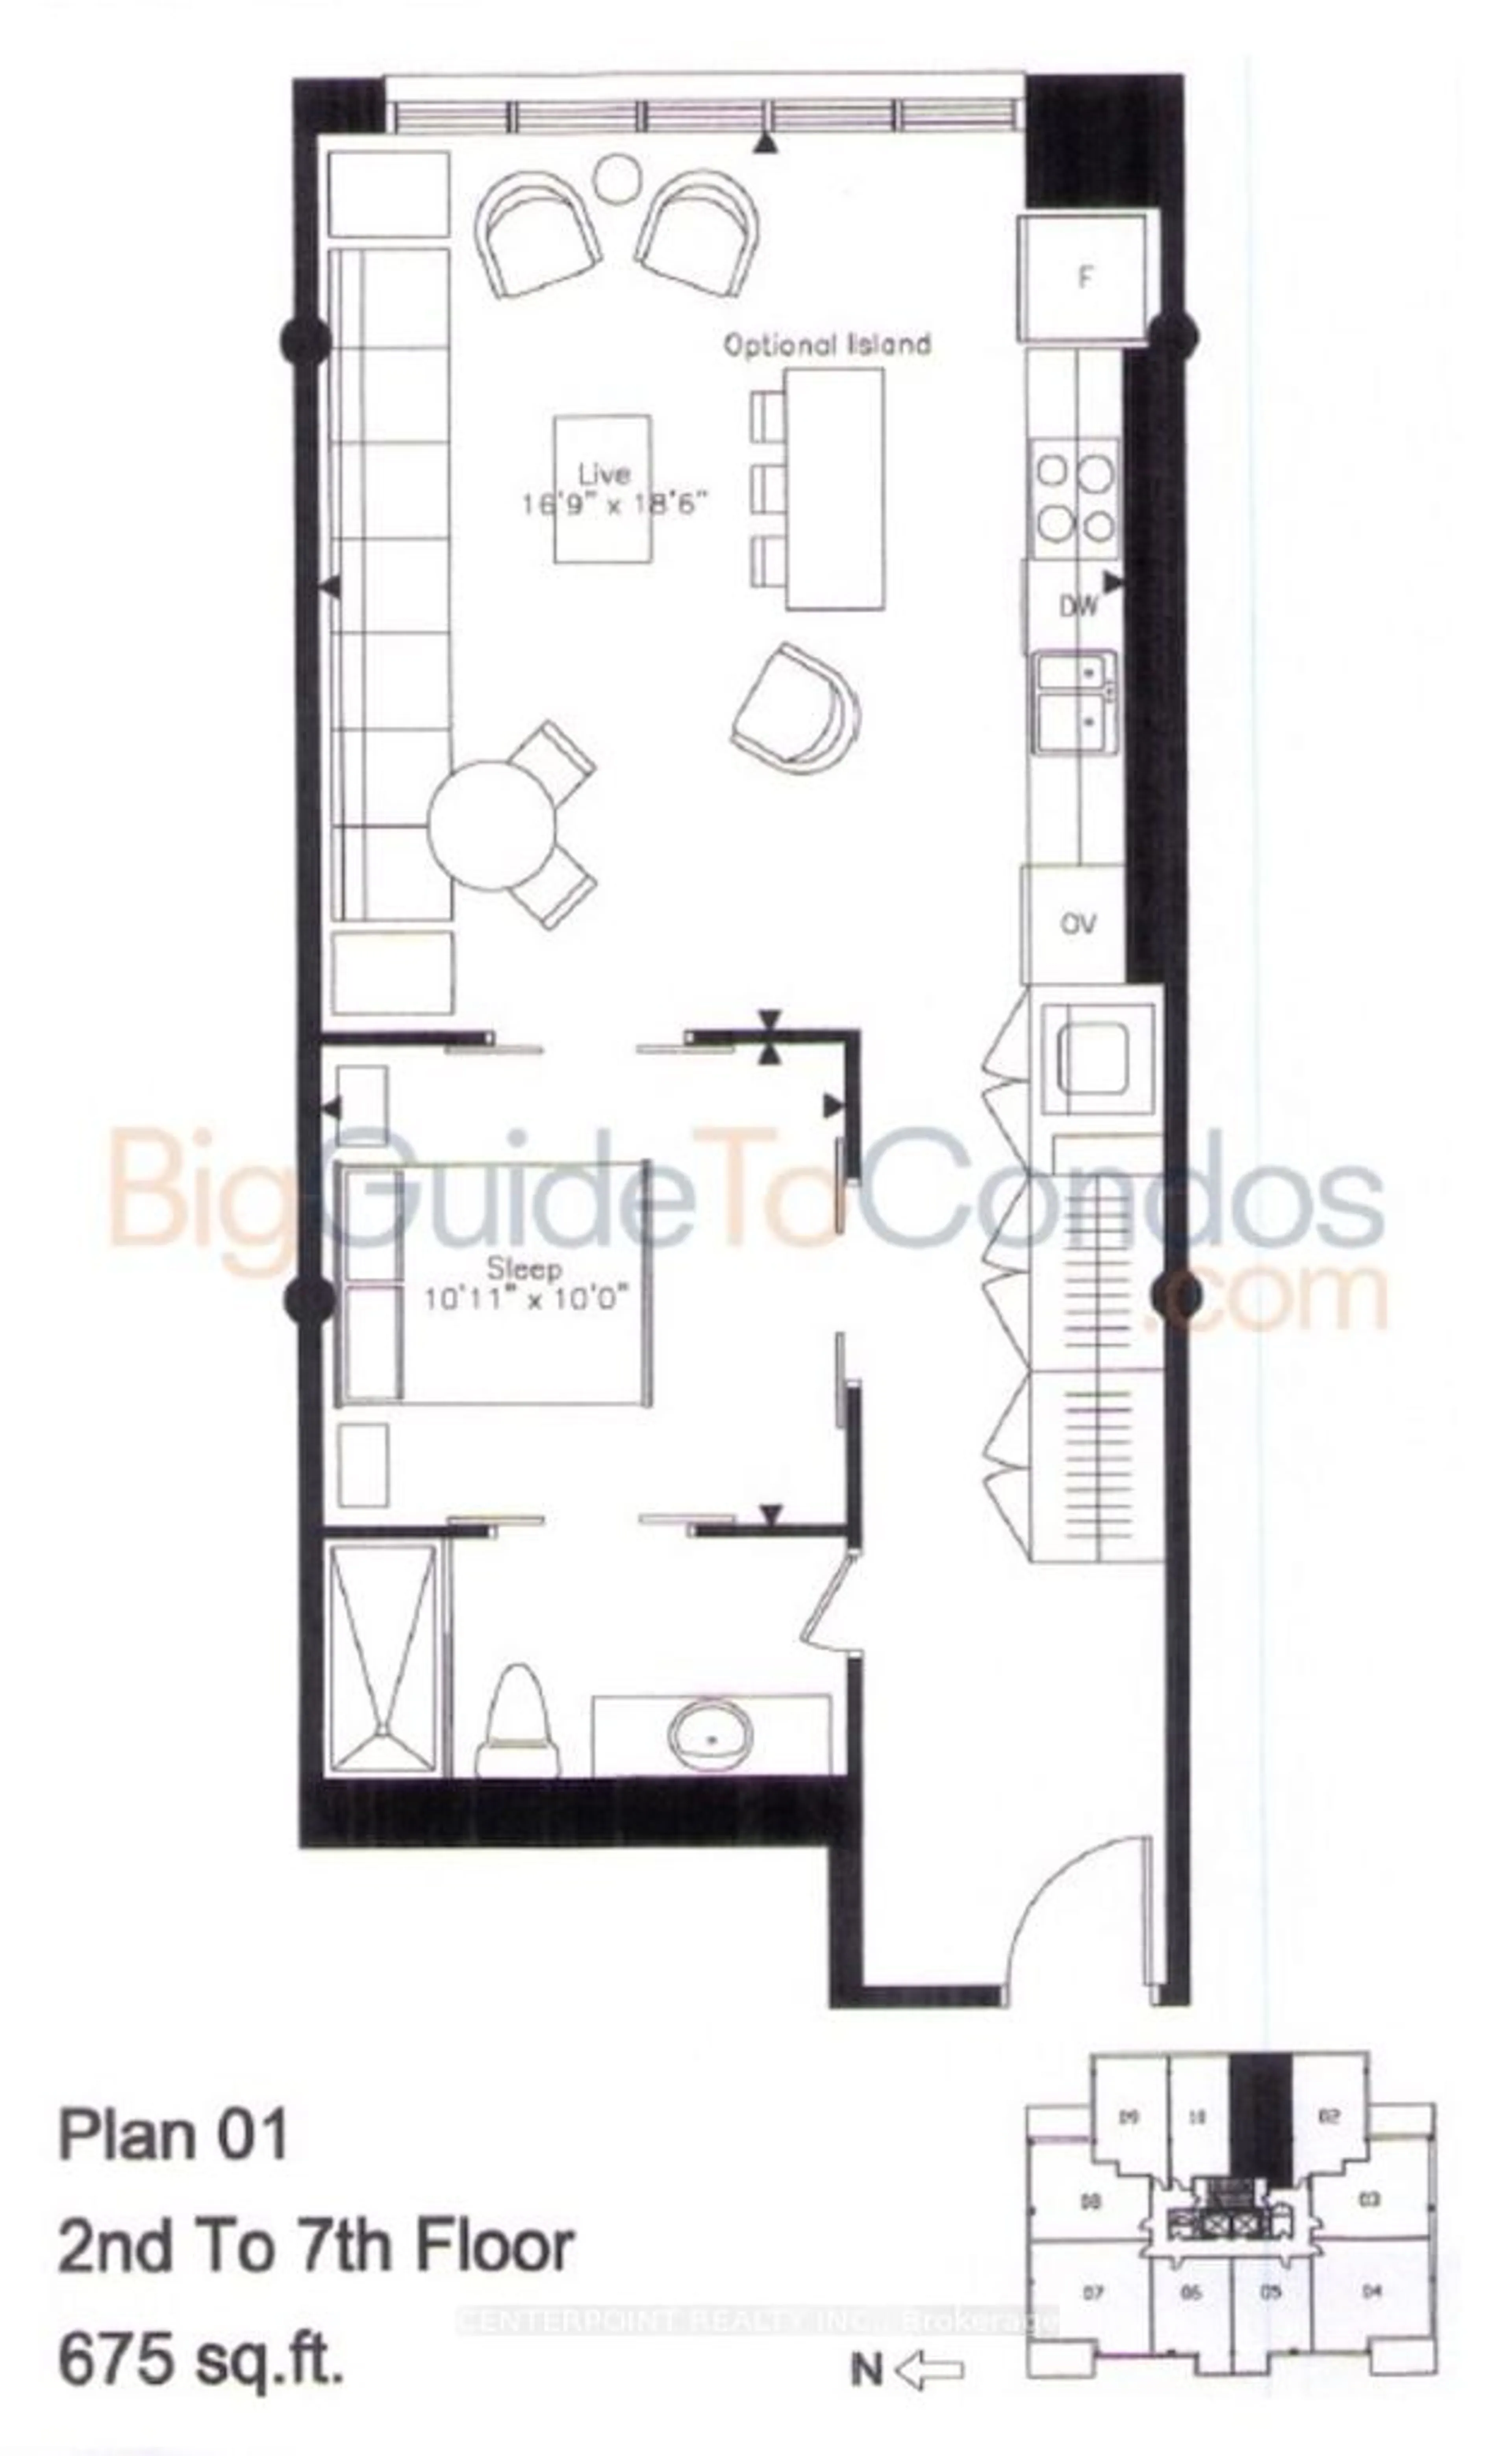 Floor plan for 19 Brant St #301, Toronto Ontario M5V 2L2